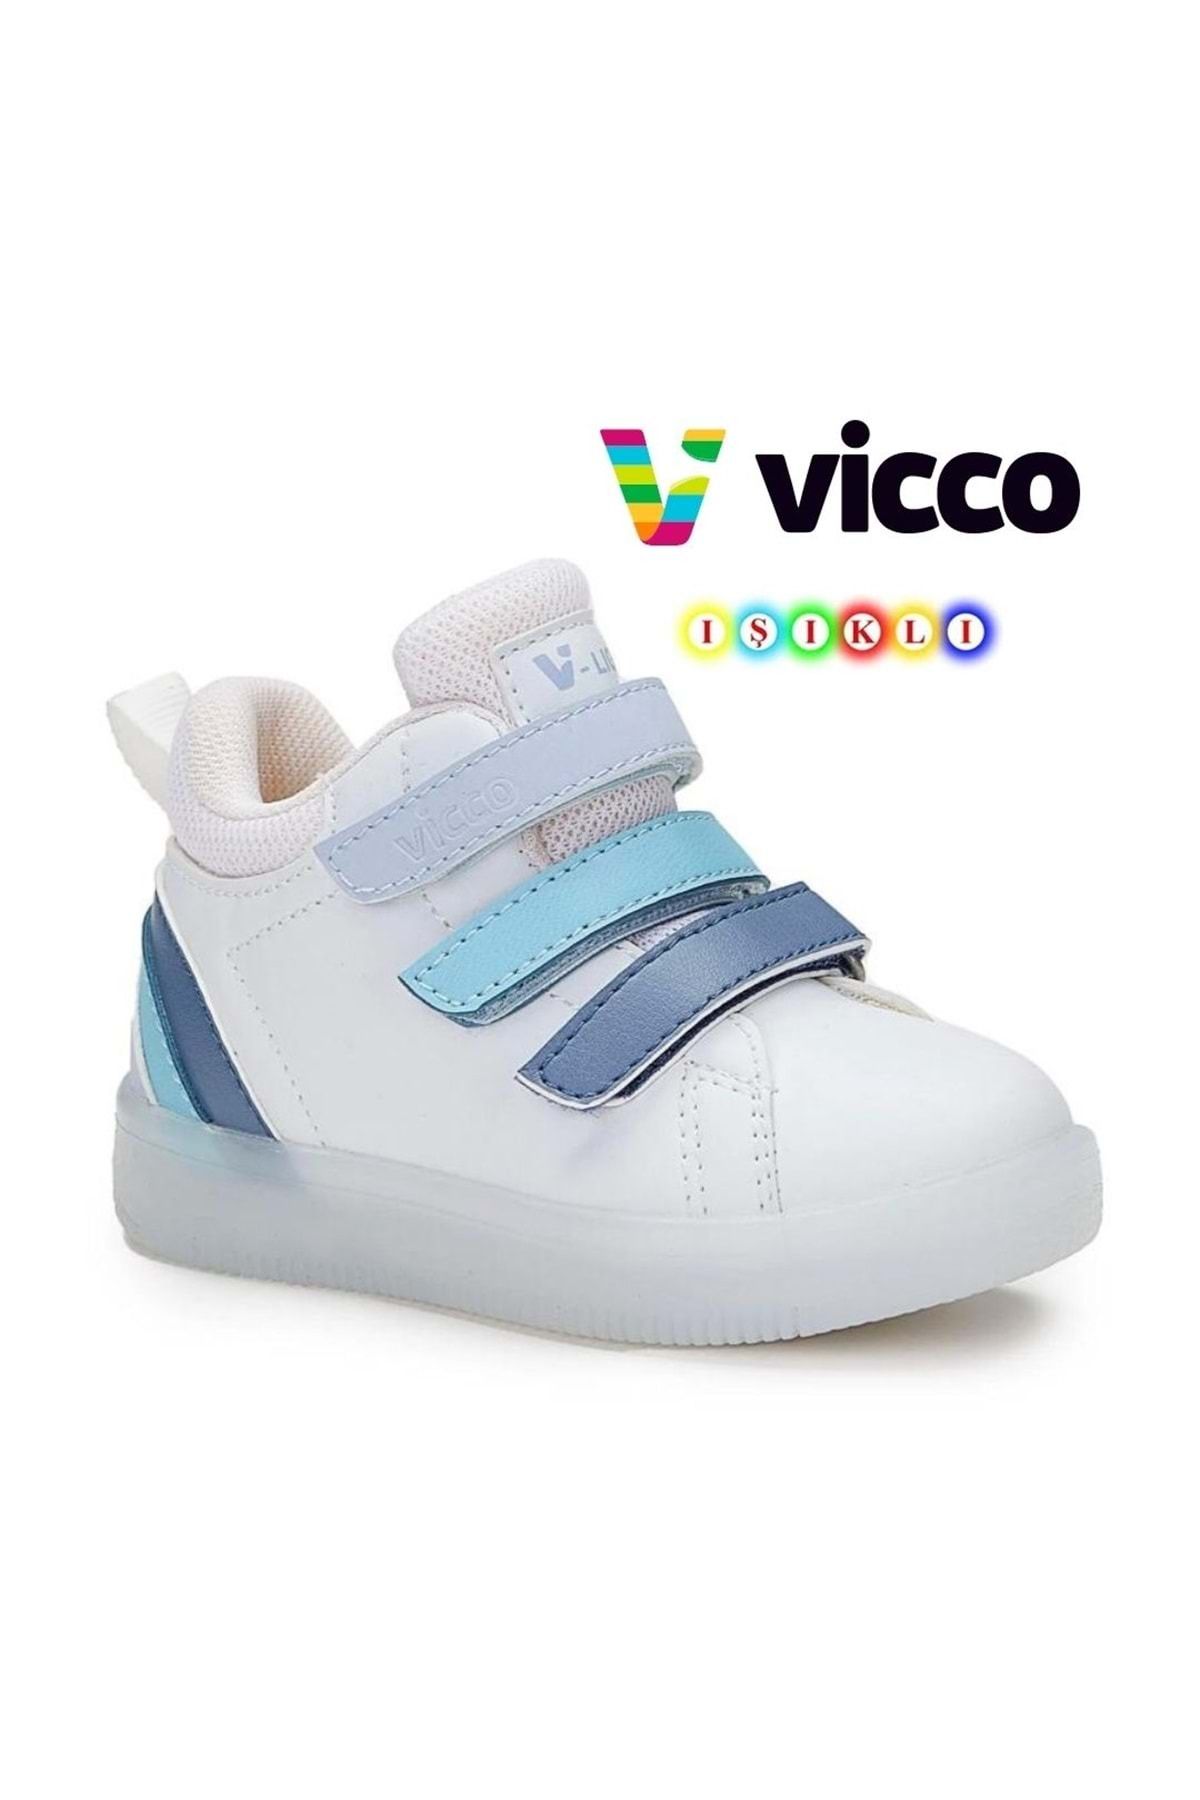 Kids Club Shoes Vicco Rainbow Işıklı Ortopedik Çocuk Boğazlı Spor Ayakkabı MAVİ